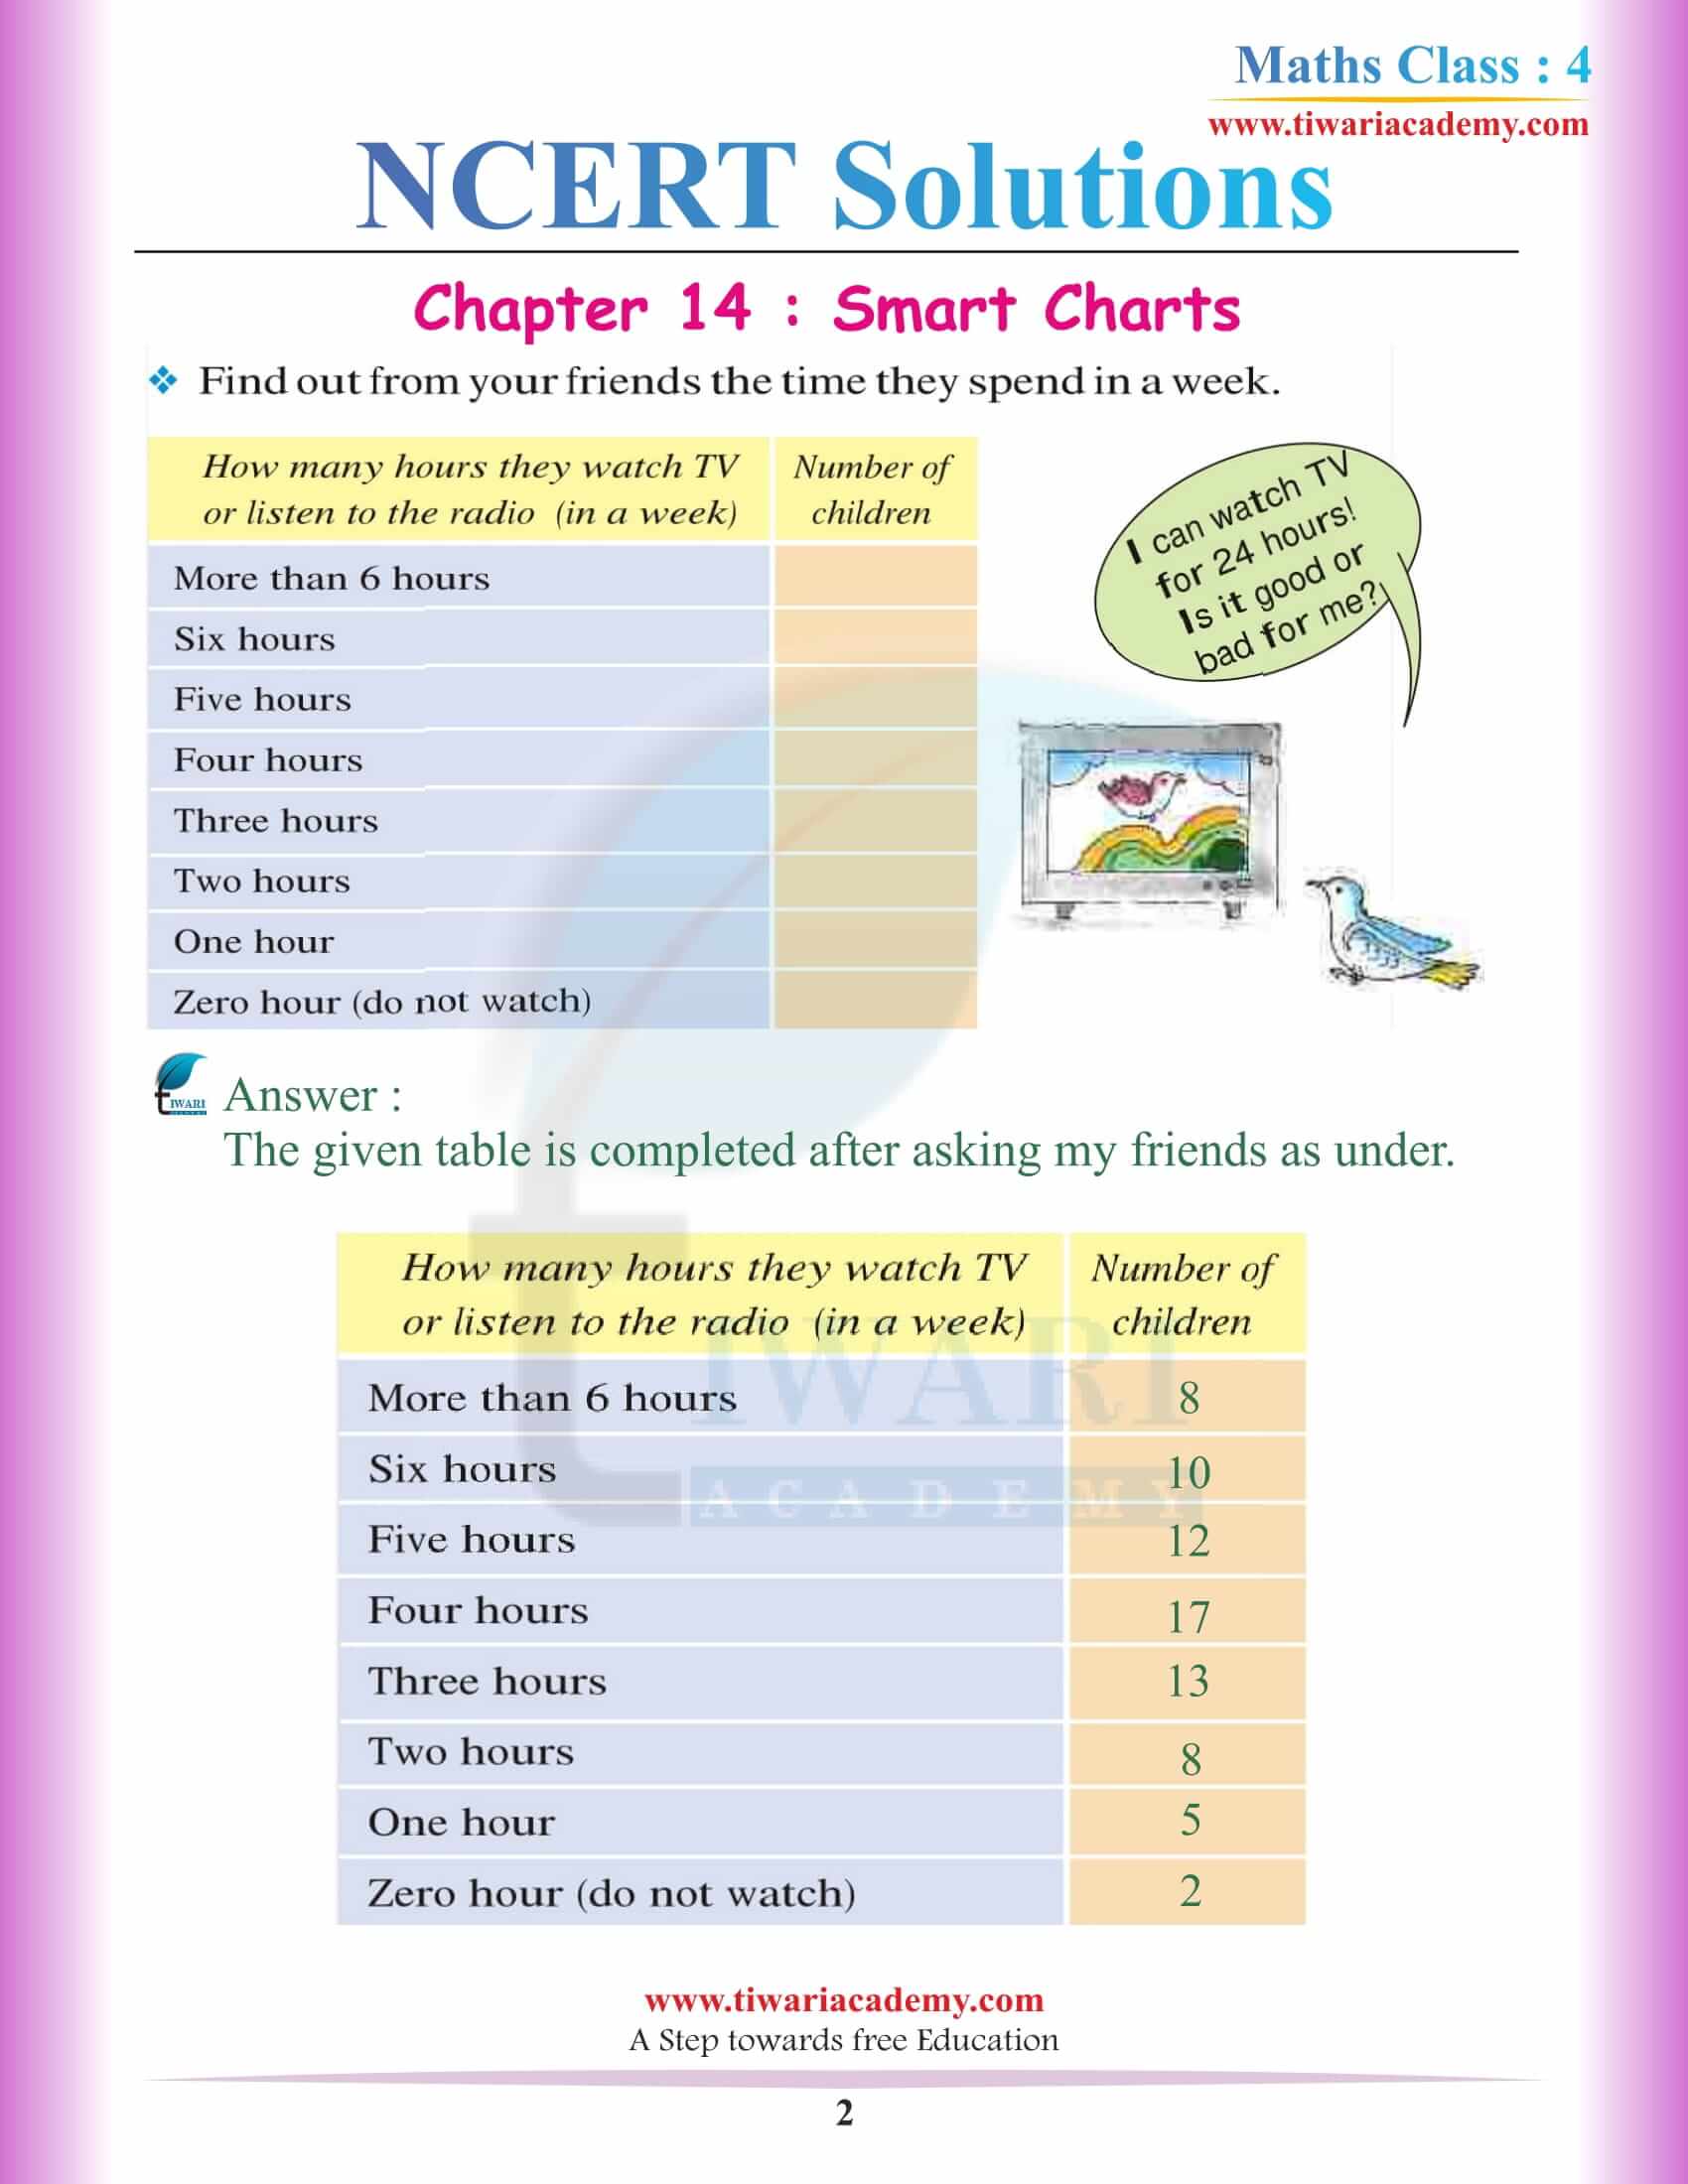 NCERT Solutions for Class 4 Maths Chapter 14